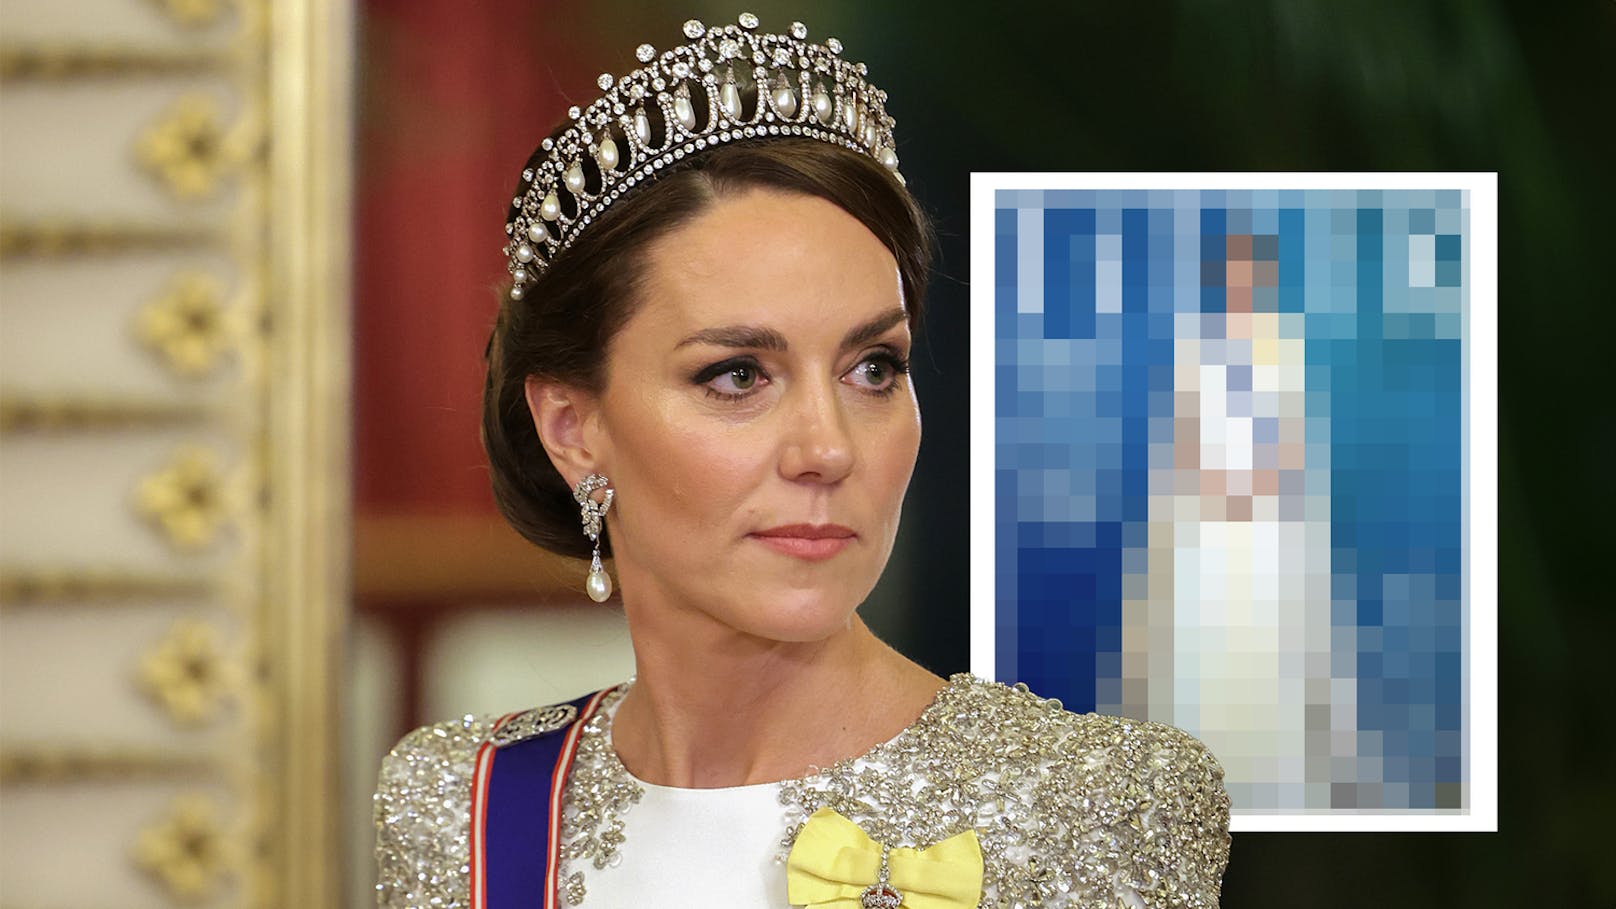 Magazin schockiert mit Porträt von Prinzessin Kate